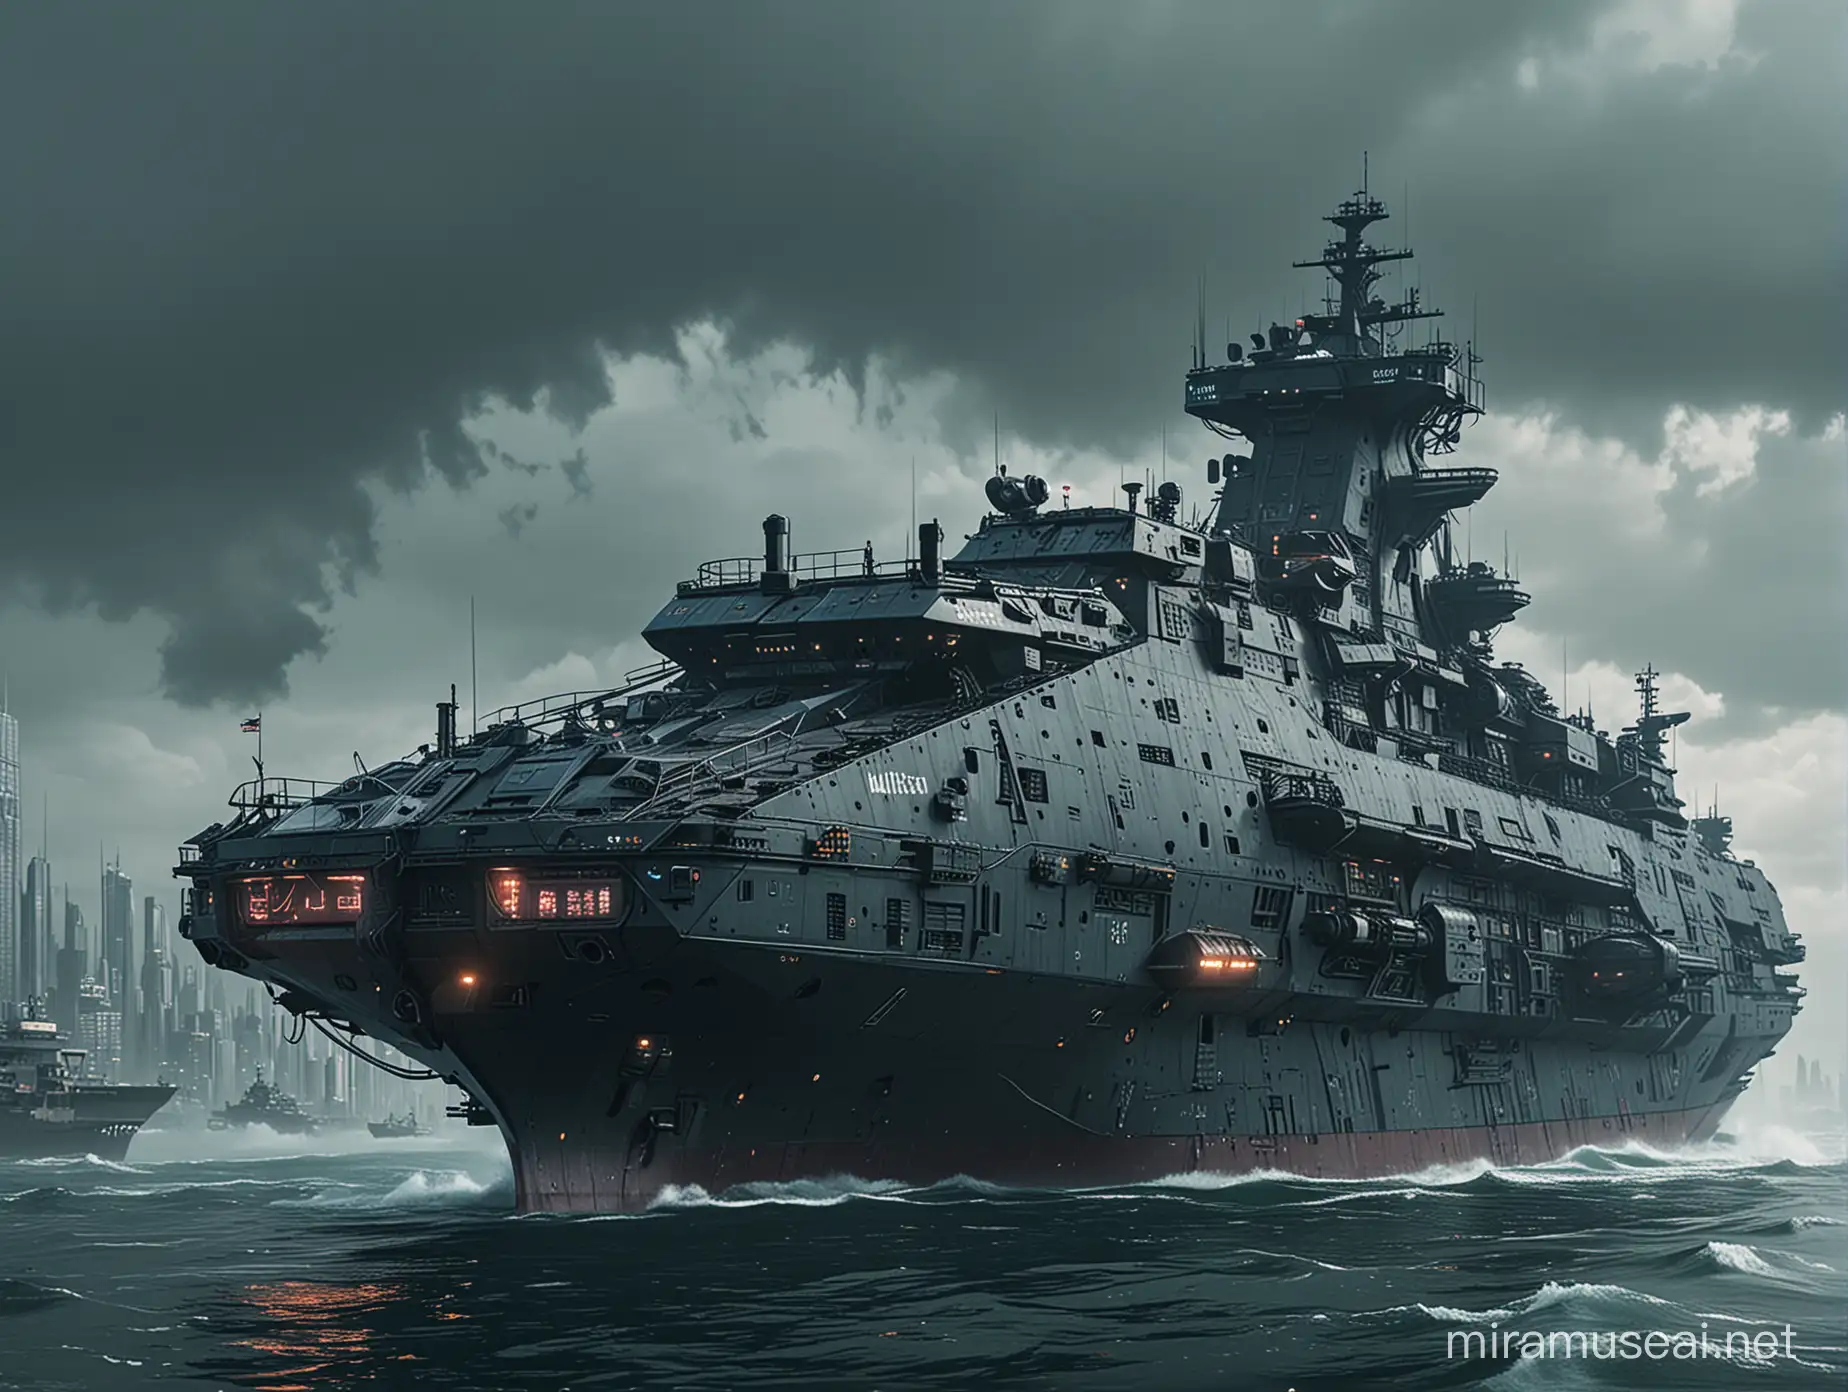 CyberpunkThemed Sea Vessel MILITECH with Futuristic Design